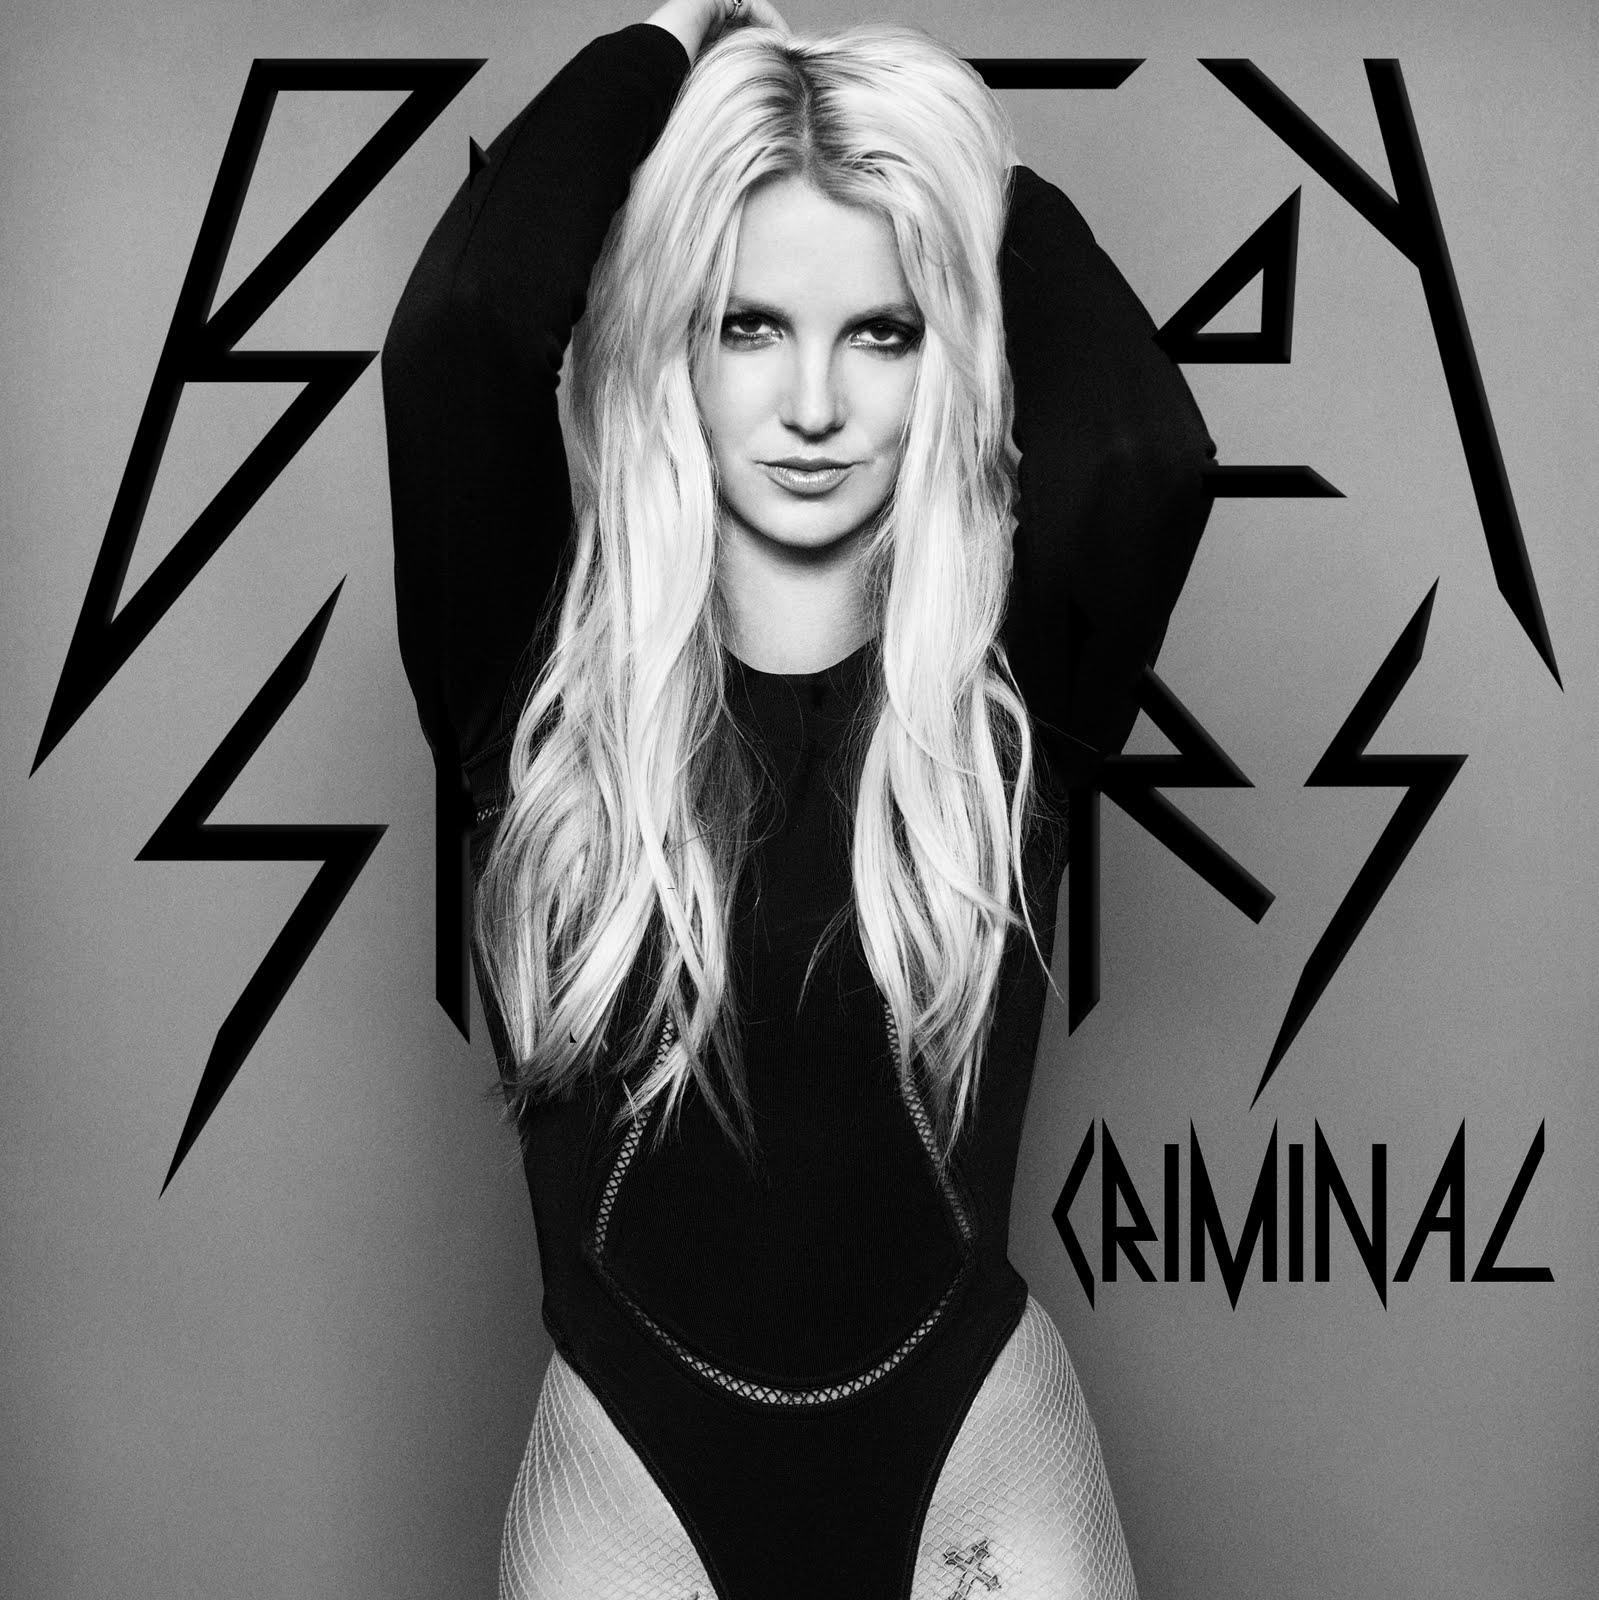 http://4.bp.blogspot.com/-6k-sJ8uhRNU/TxVONBxSOxI/AAAAAAAAEO0/tE9Bje7m_zI/s1600/Britney+Spears+-+Criminal.jpg